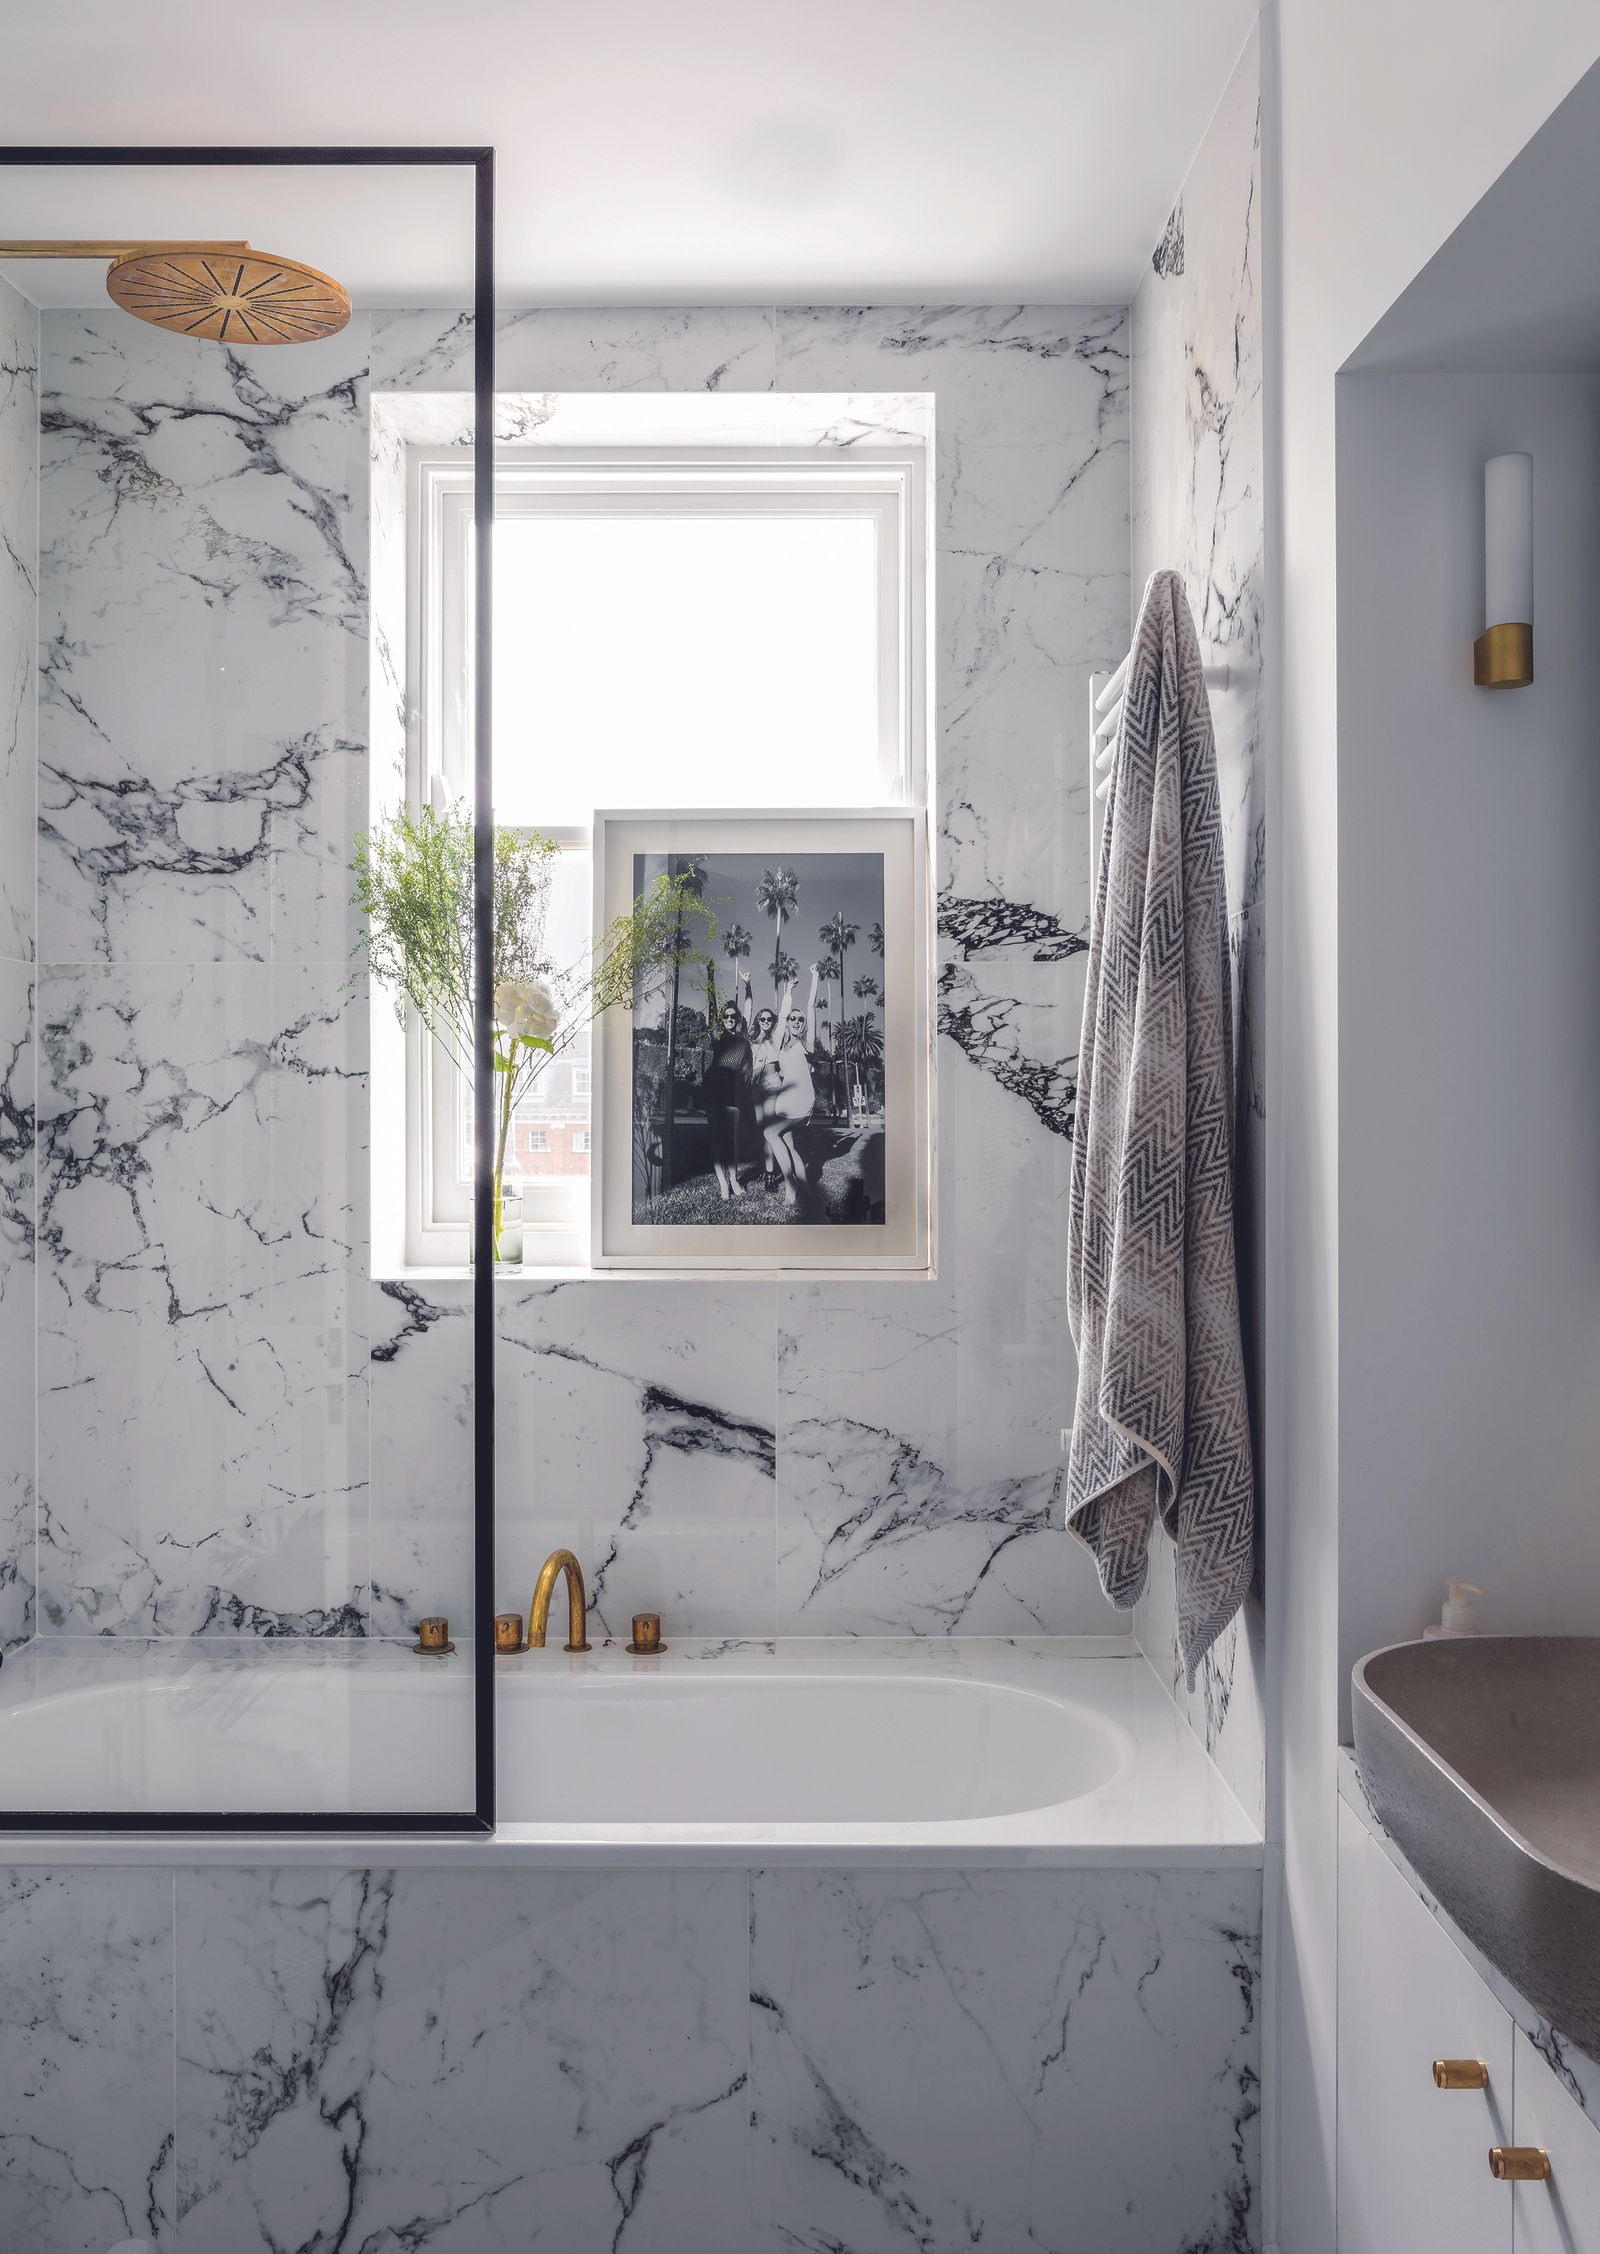 Bathroom shower ideas: 11 bathtub shower schemes to inspire